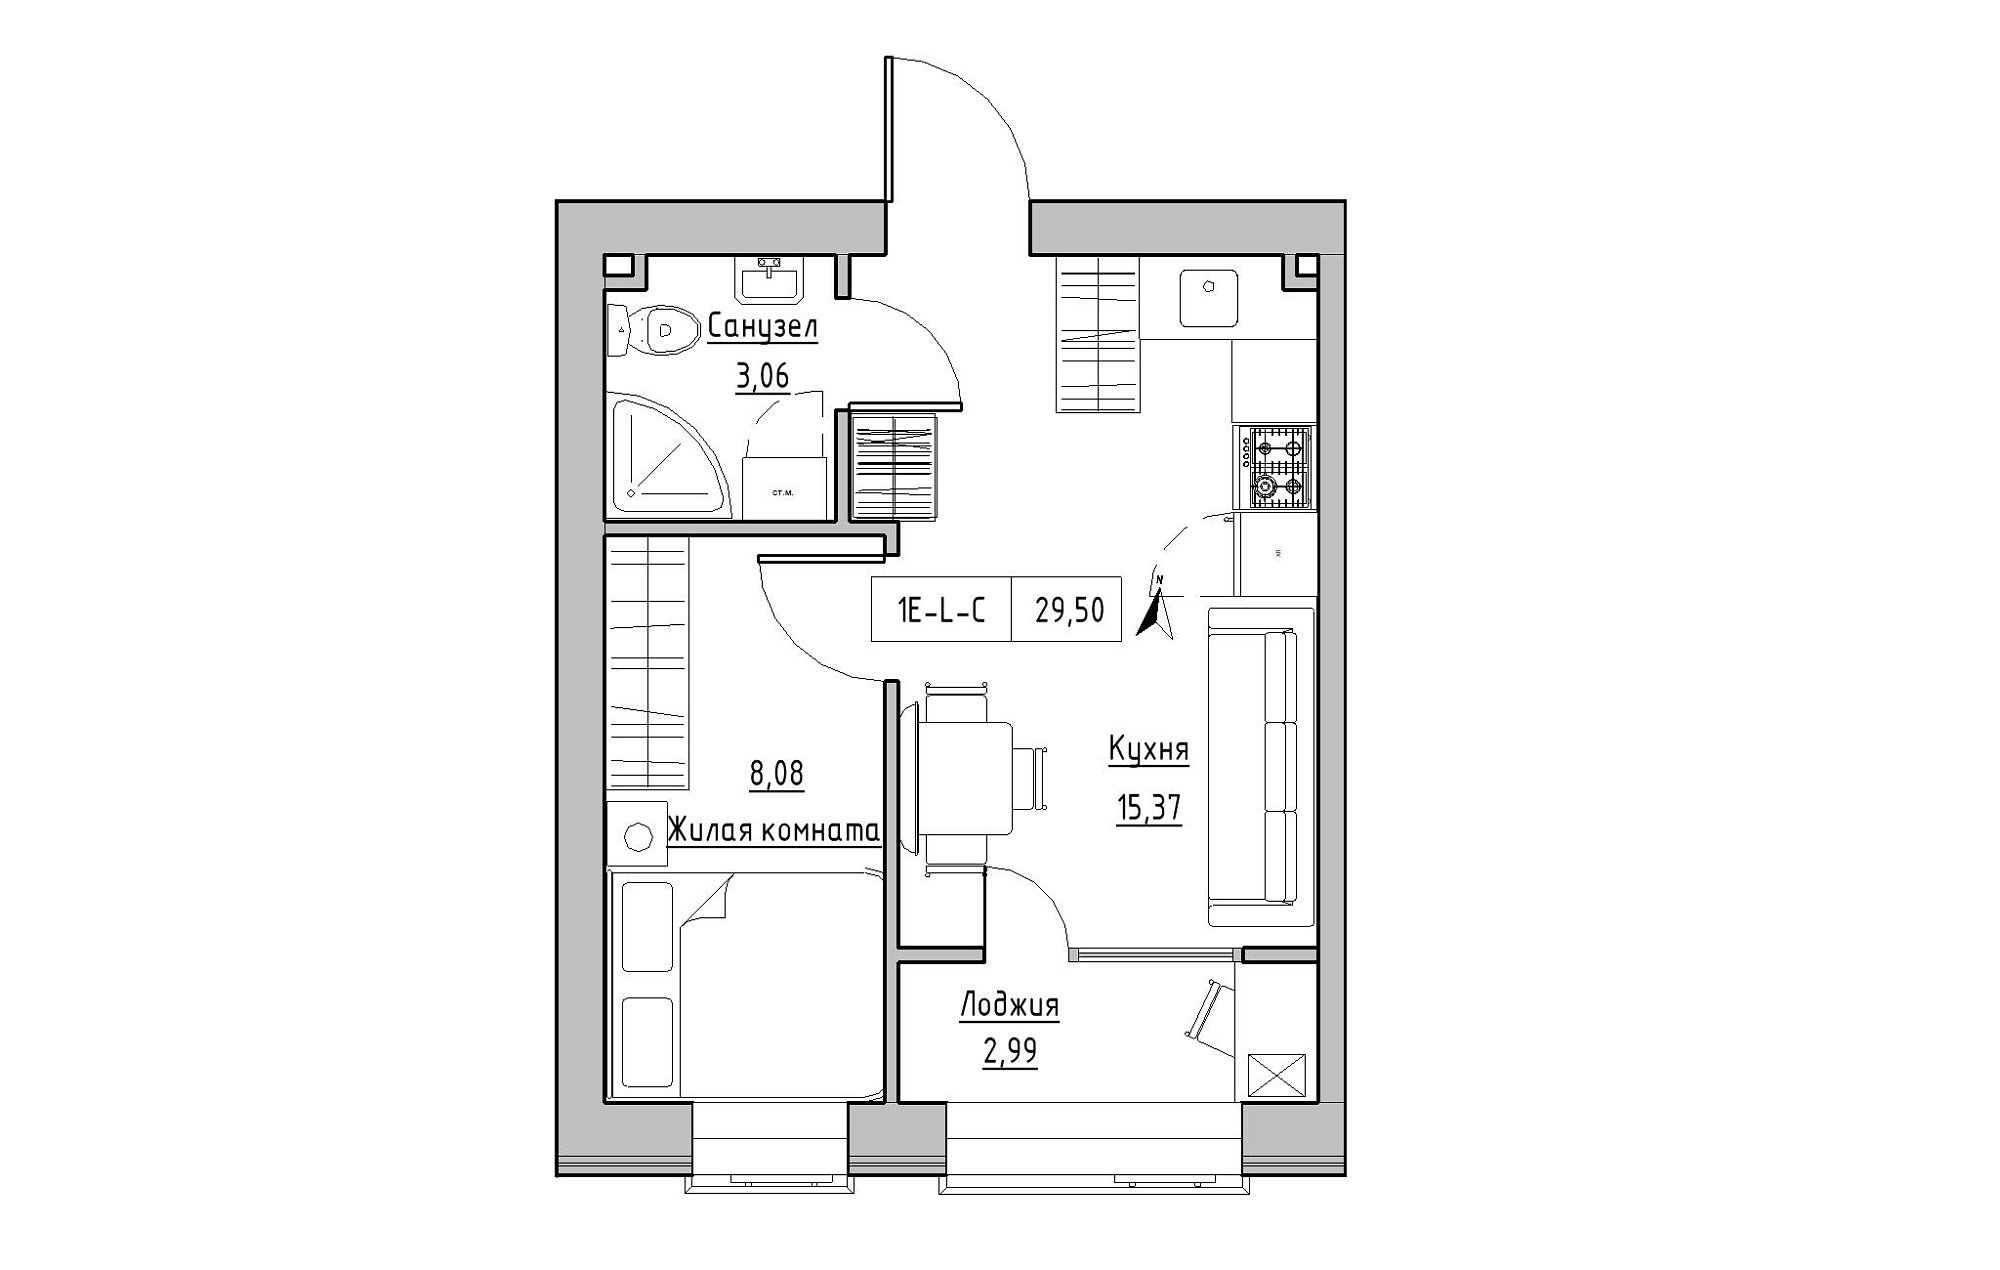 Планування 1-к квартира площею 29.5м2, KS-019-01/0010.